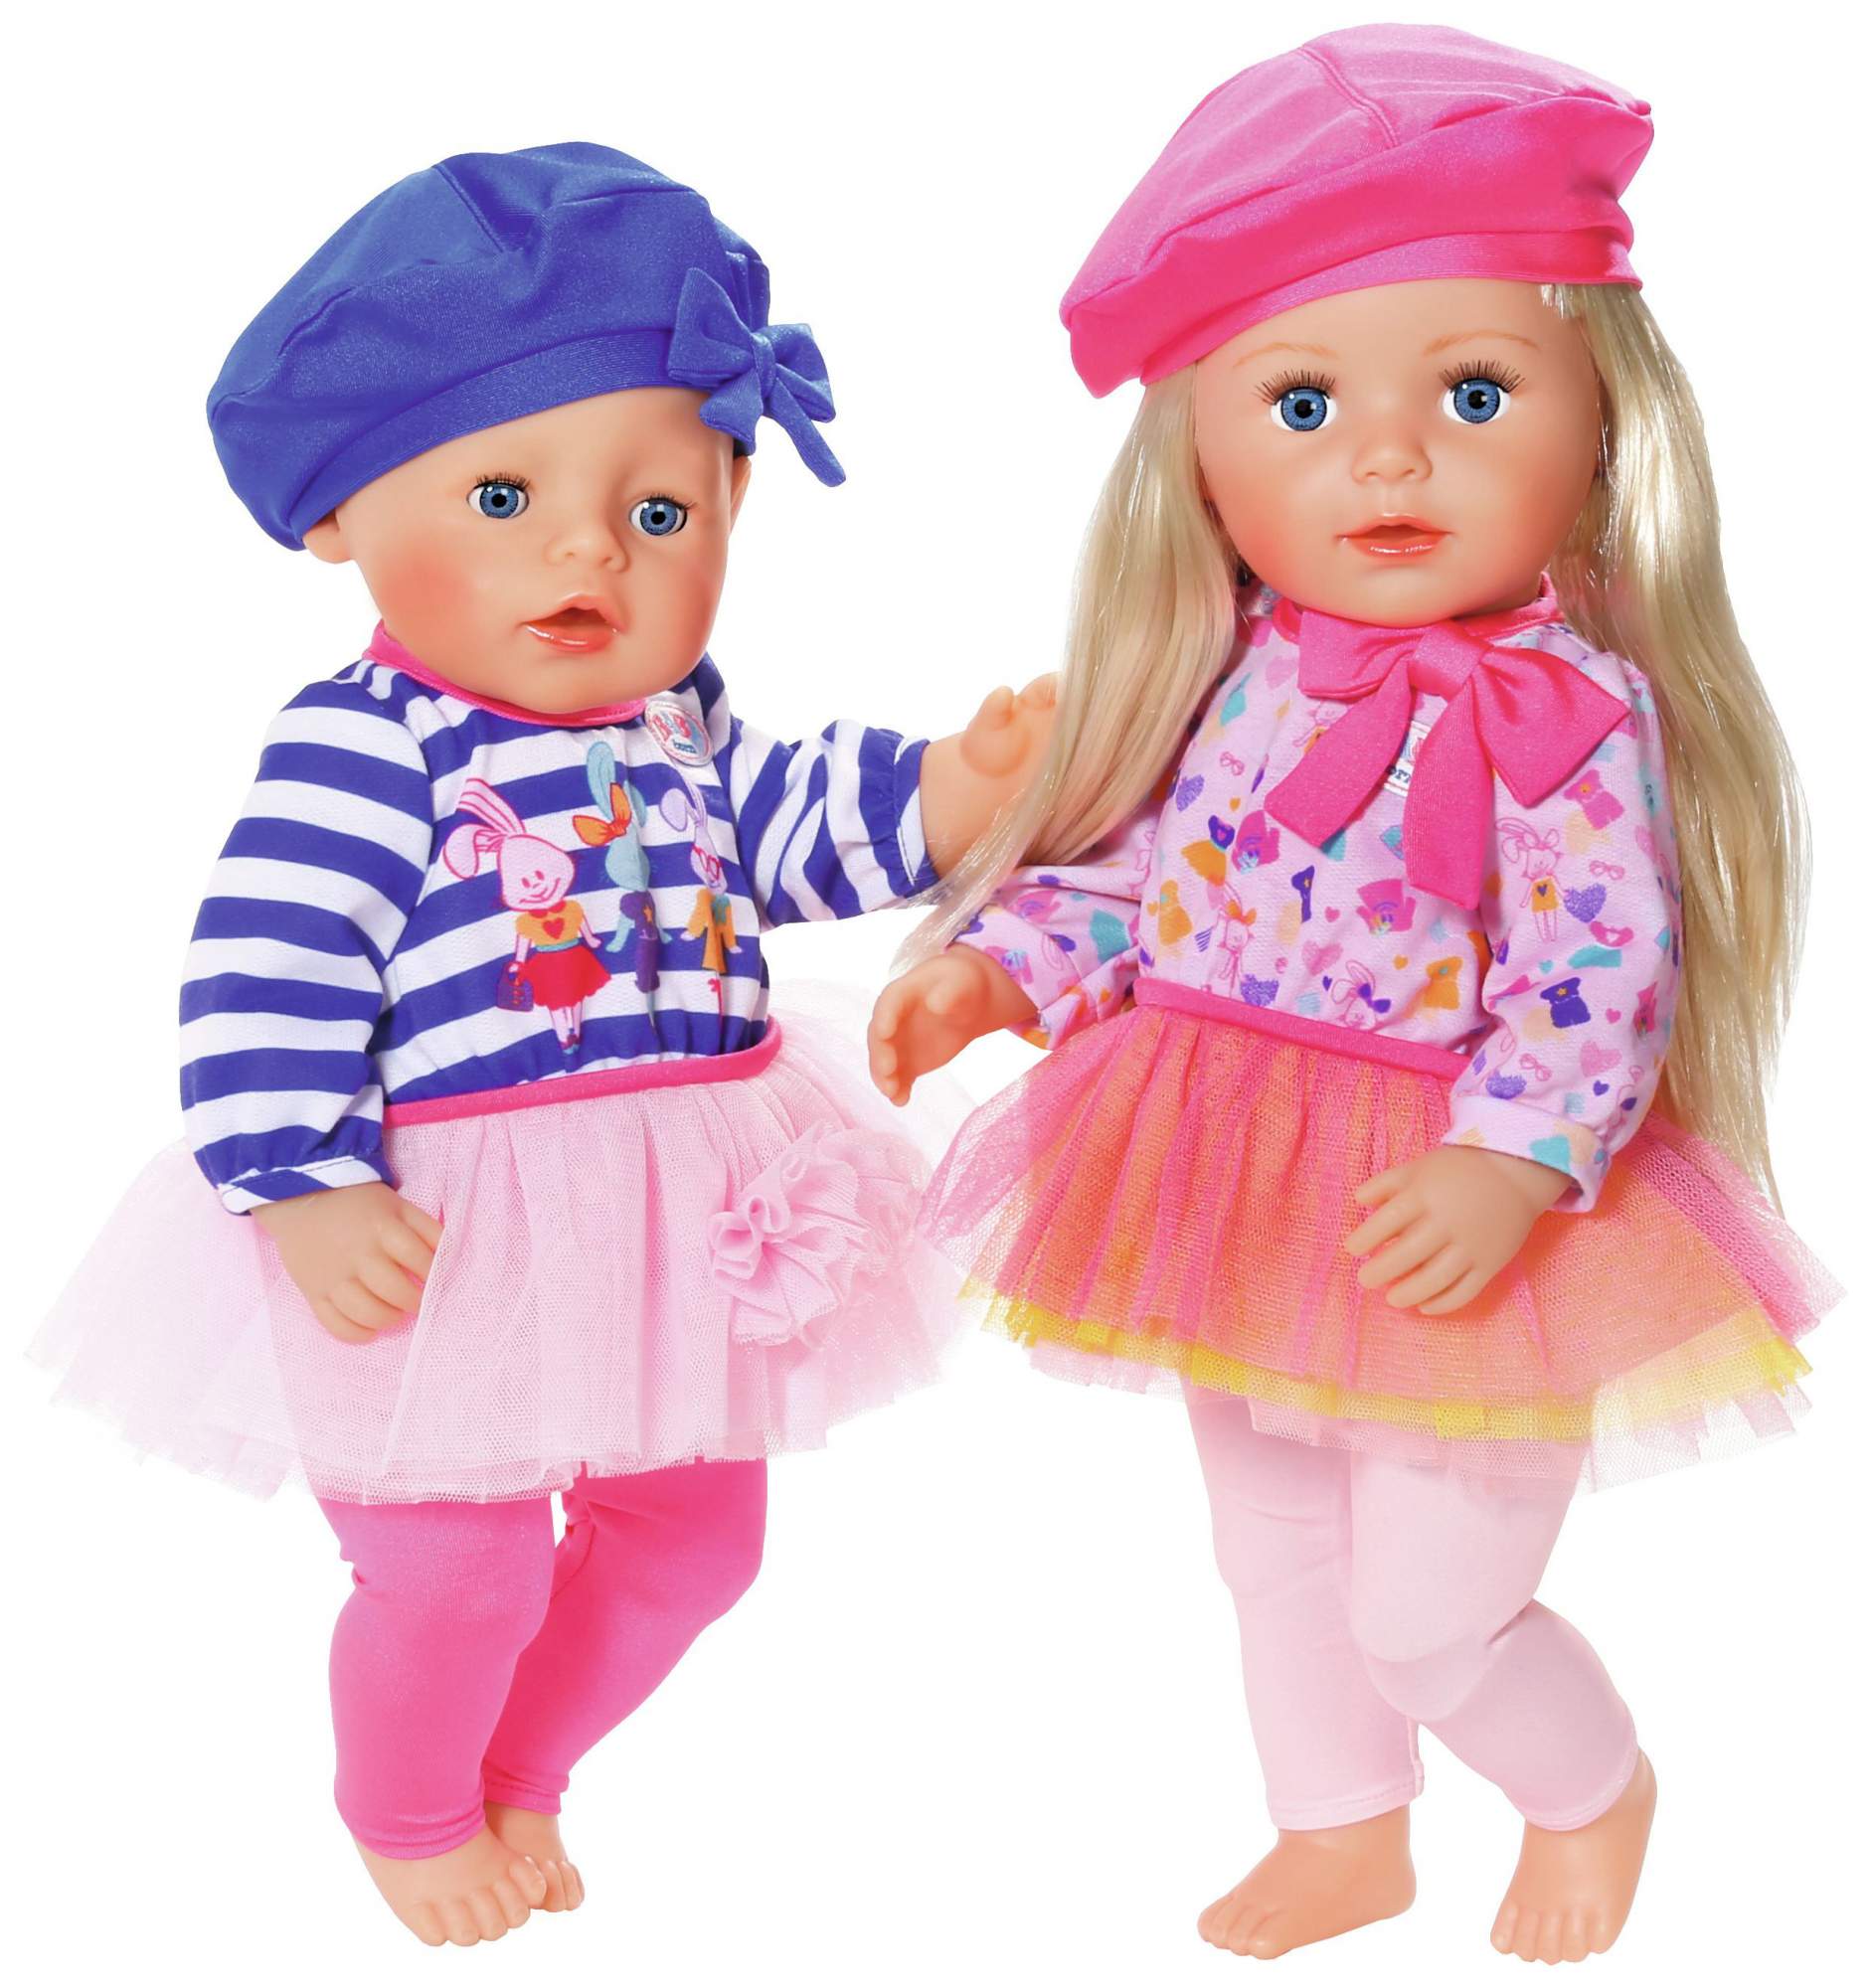 Ляльку для девочек. Куклы фирмы Zapf. Лялька с одеждой. Одежда для Baby born старшей сестре.